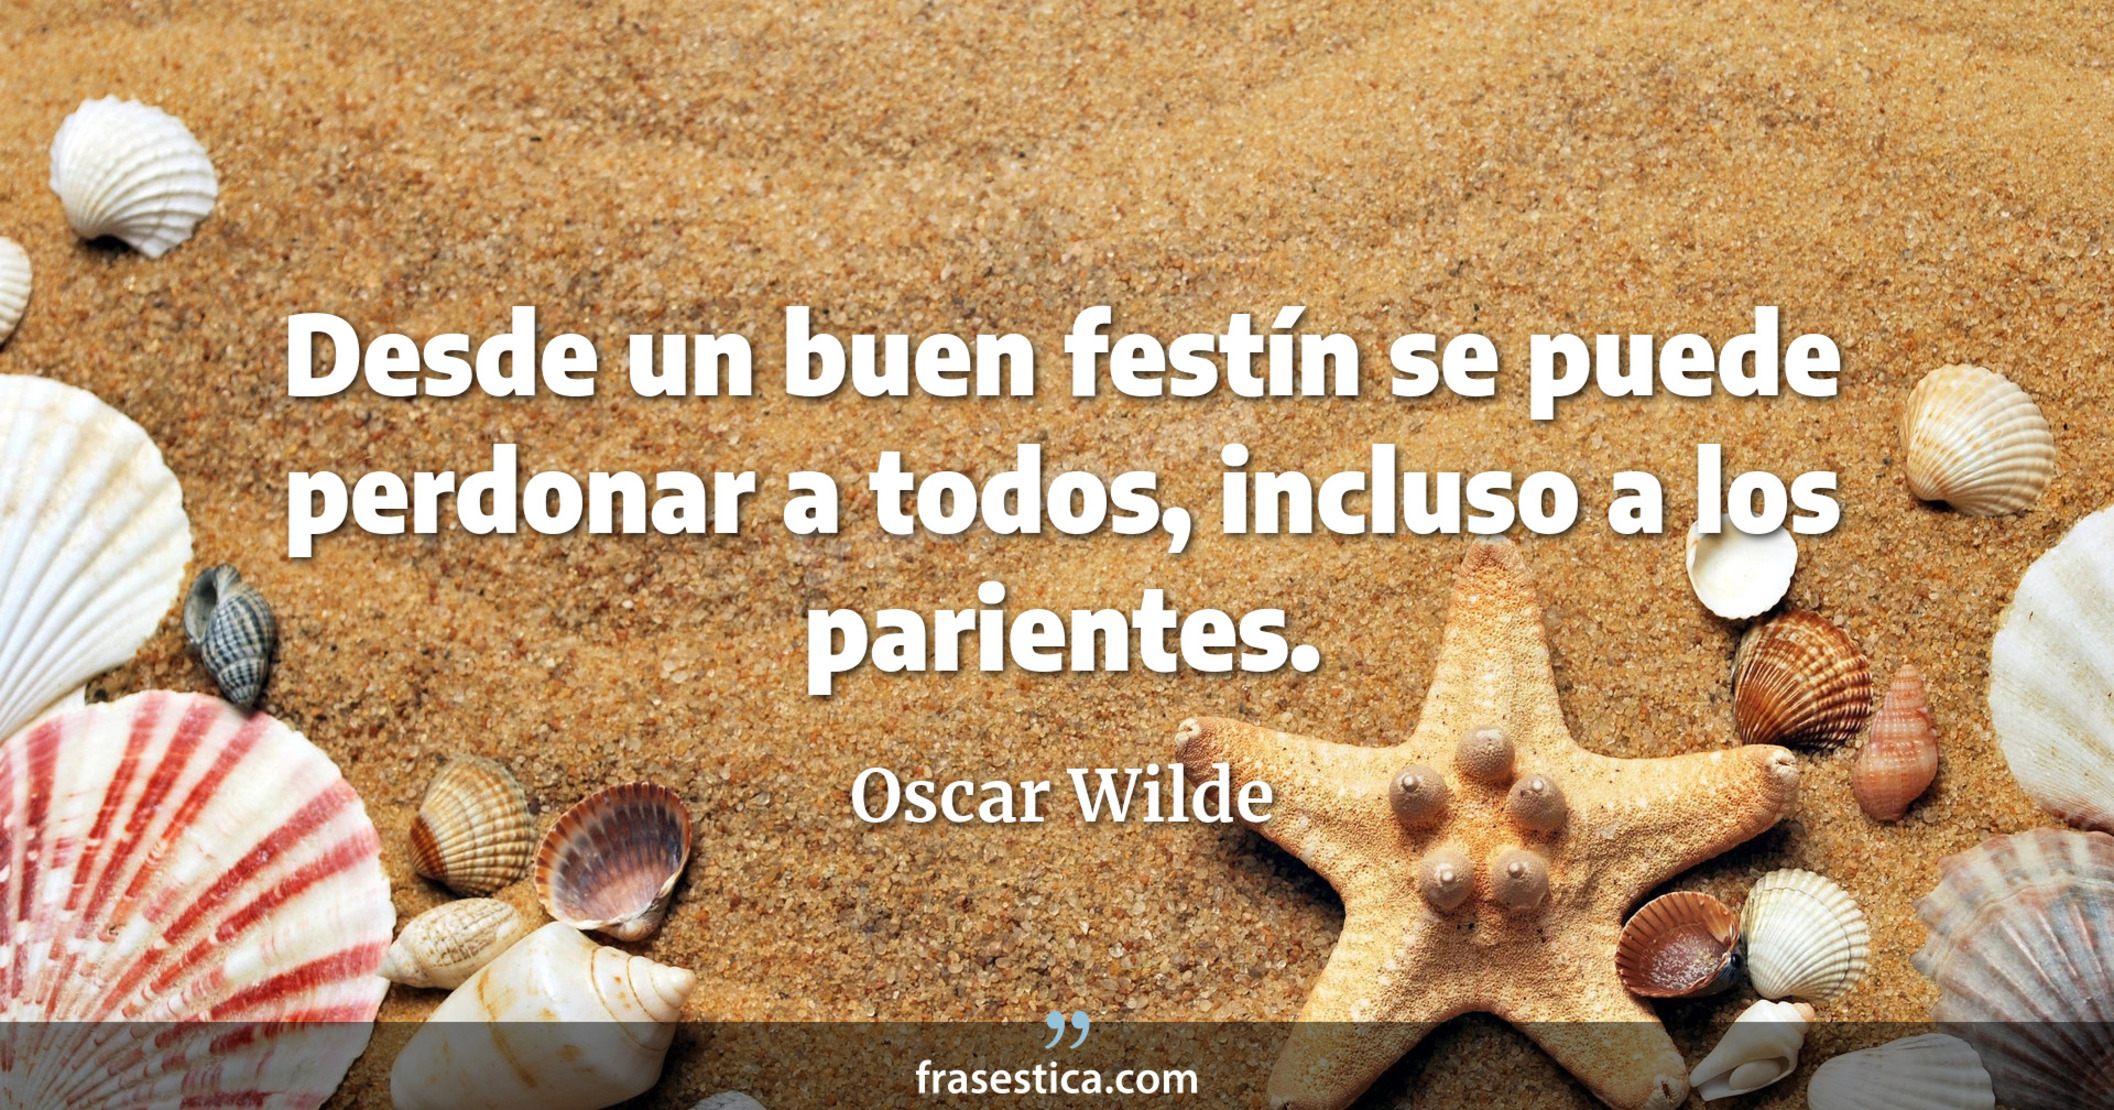 Desde un buen festín se puede perdonar a todos, incluso a los parientes. - Oscar Wilde